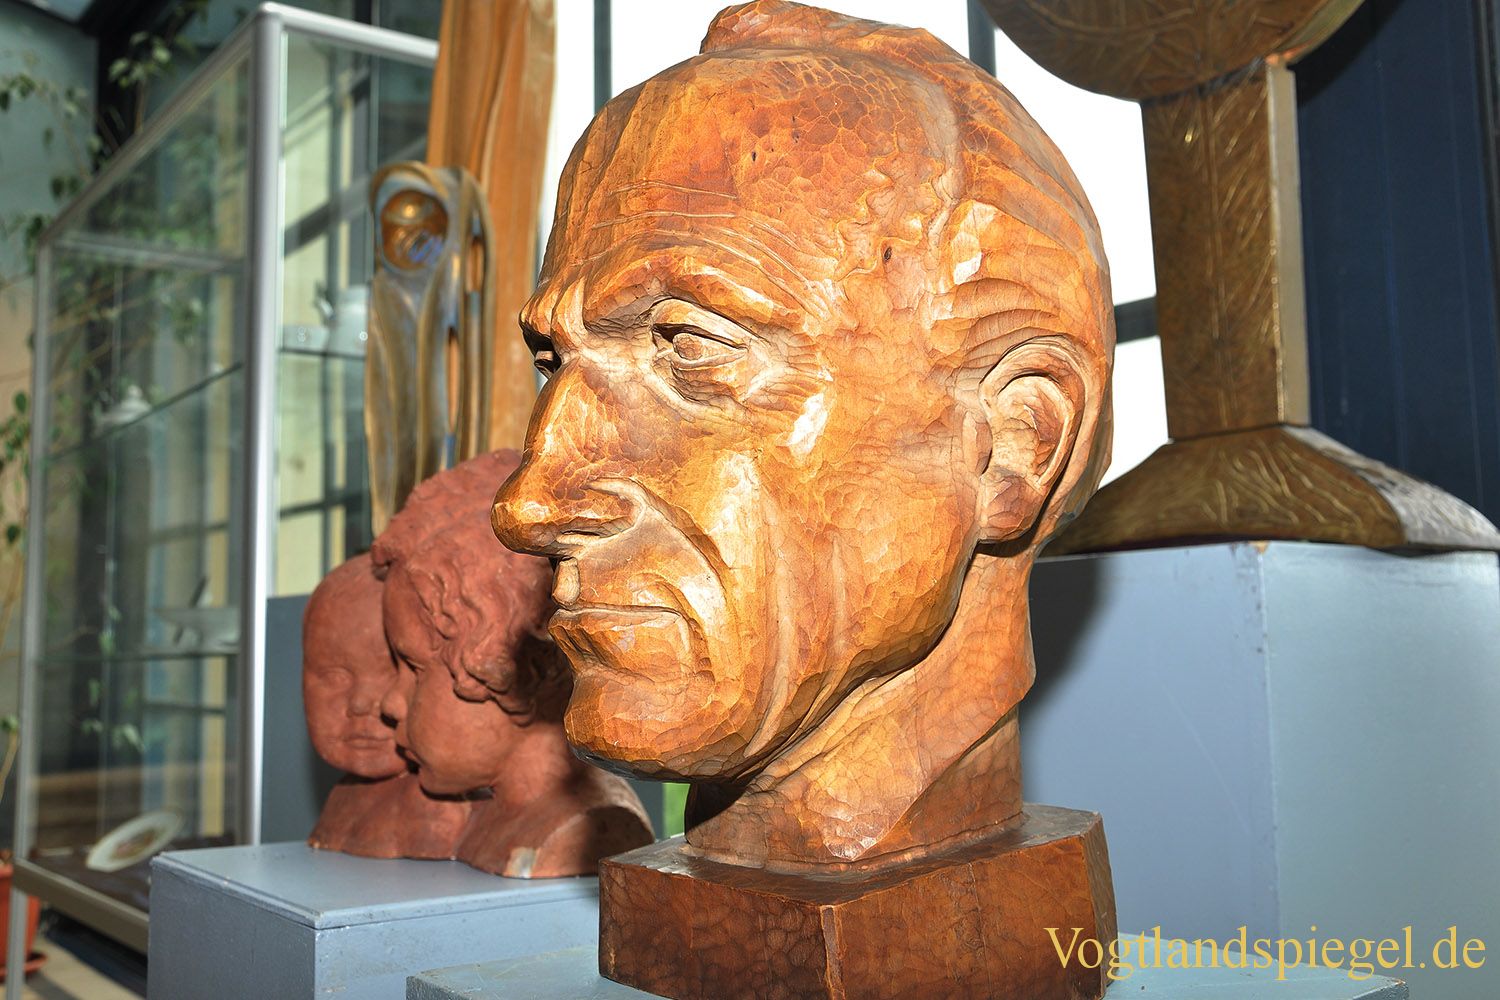 Wertvolle Sammlung mit Arbeiten der Bildhauerin Elly-Viola Nahmmacher an Stadt Greiz übergeben